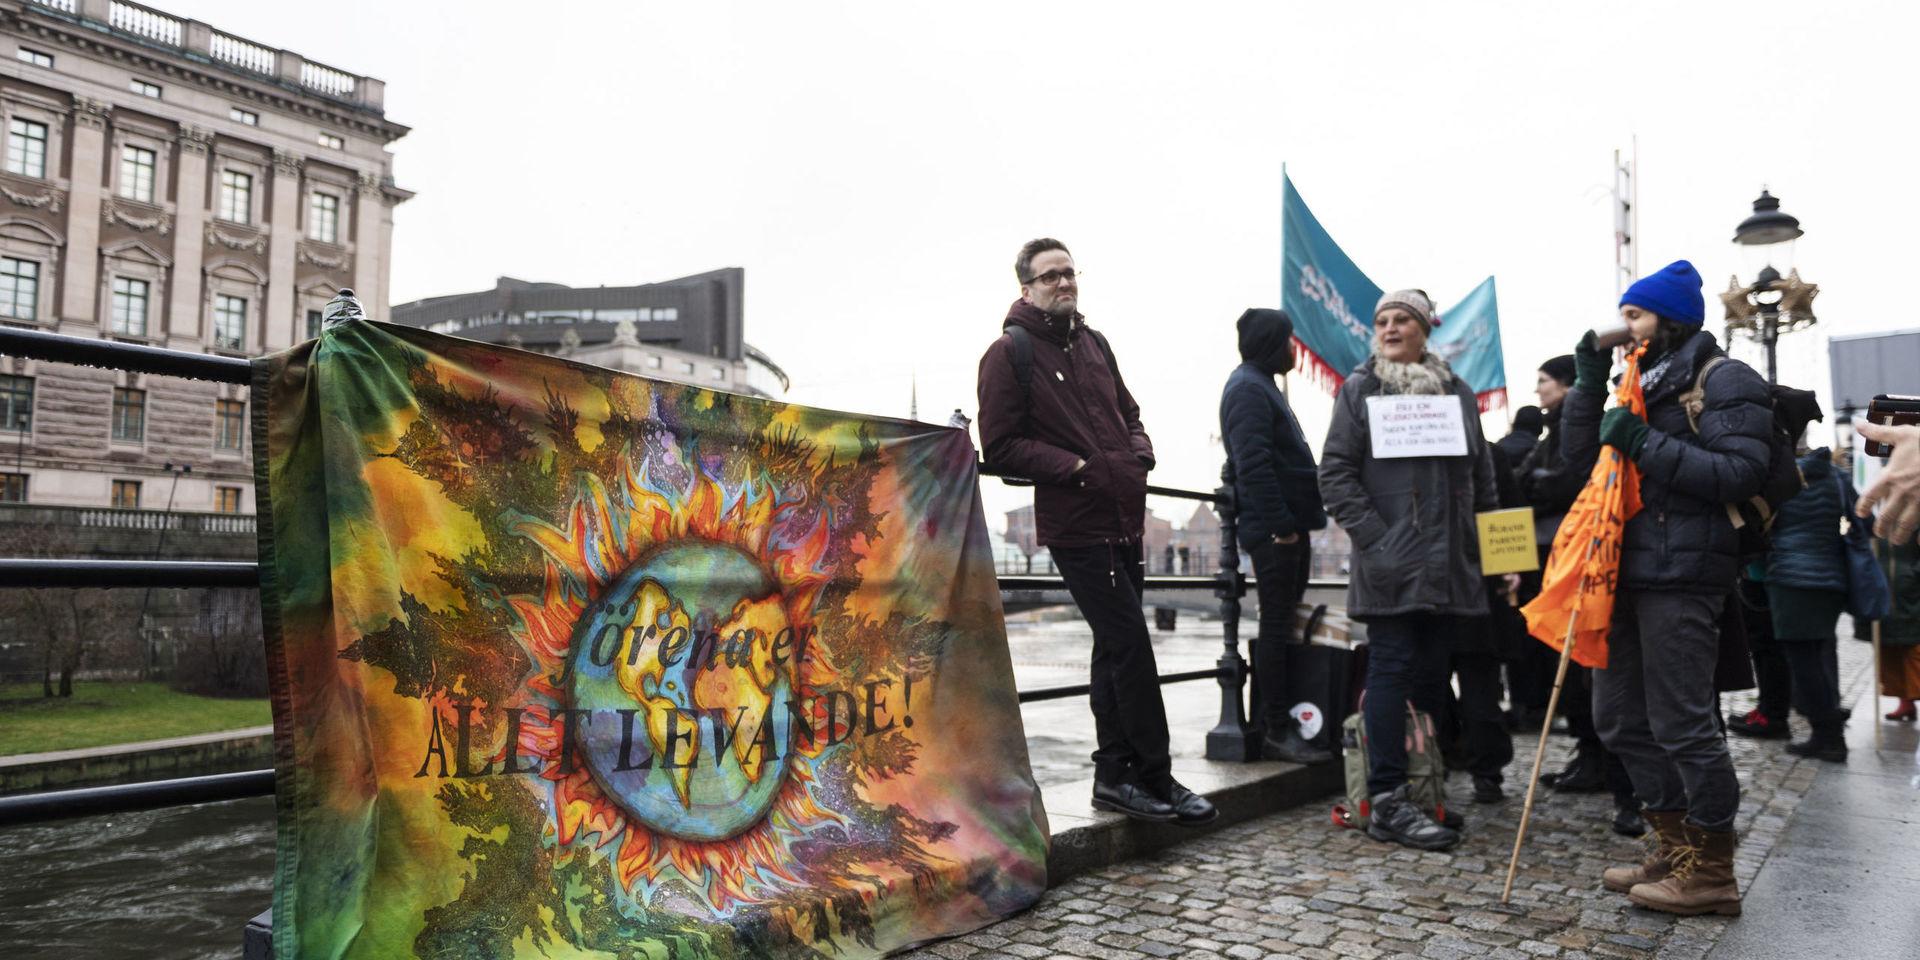 #artistsforfuture kallar sig en grupp konstnärer som varje fredag demonstrerar utanför Sagerska palatset, statsministerbostaden, i Stockholm. 